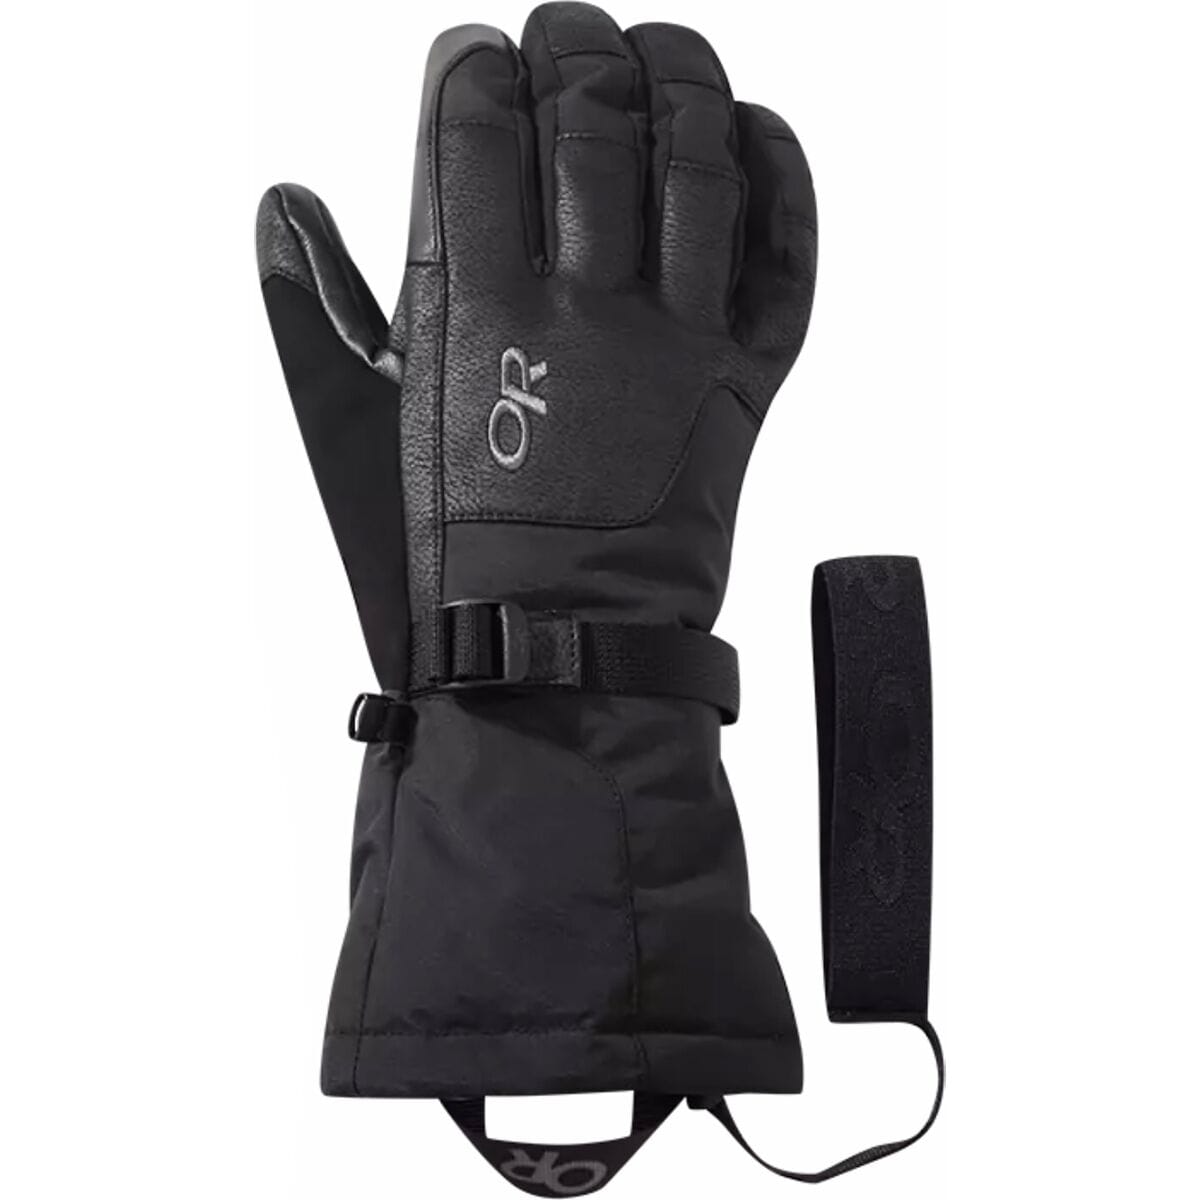 Outdoor Research Revolution Sensor Glove - Men's